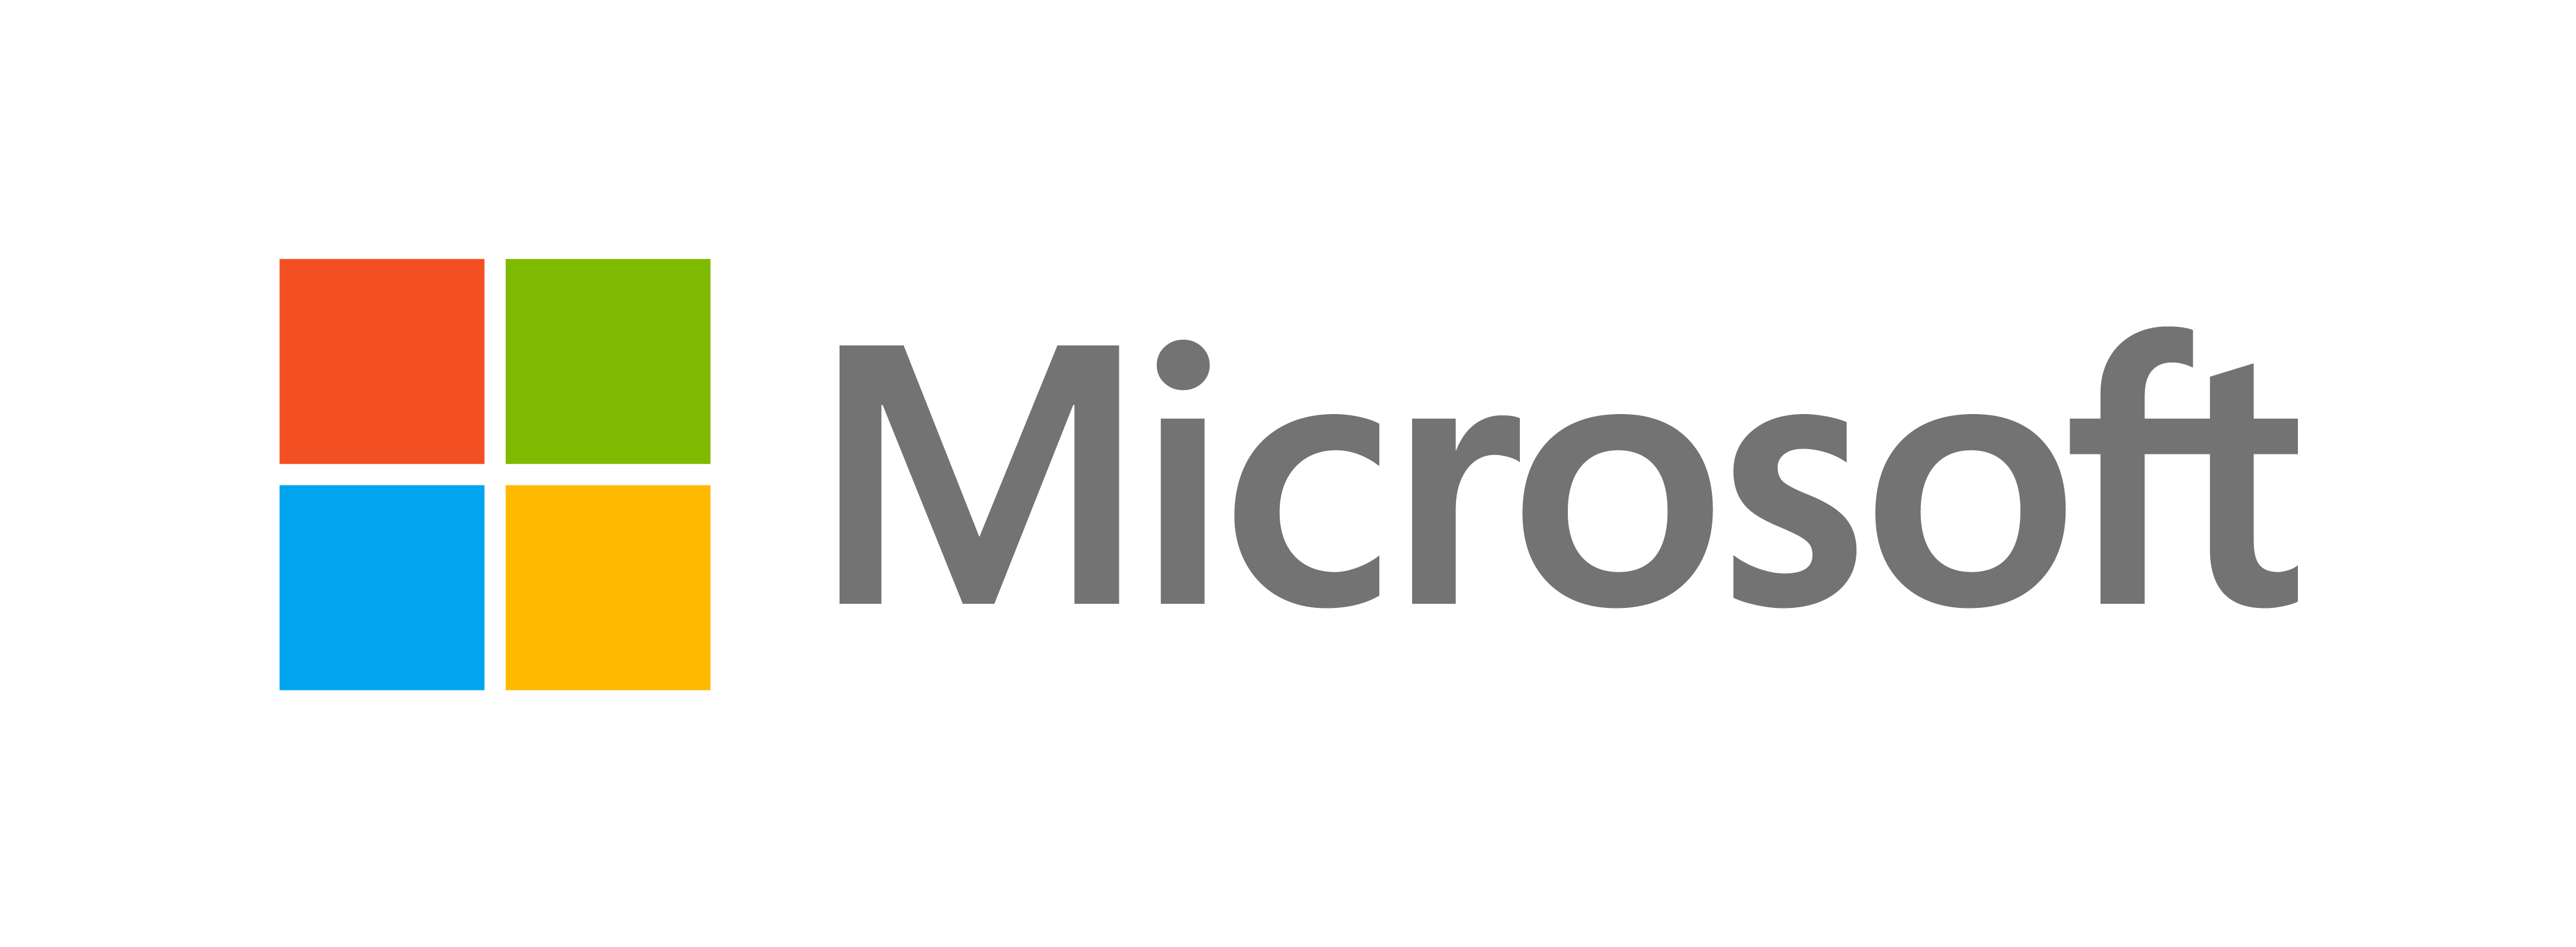 Microsoft dezvăluie un nou aspect - Blogul oficial Microsoft